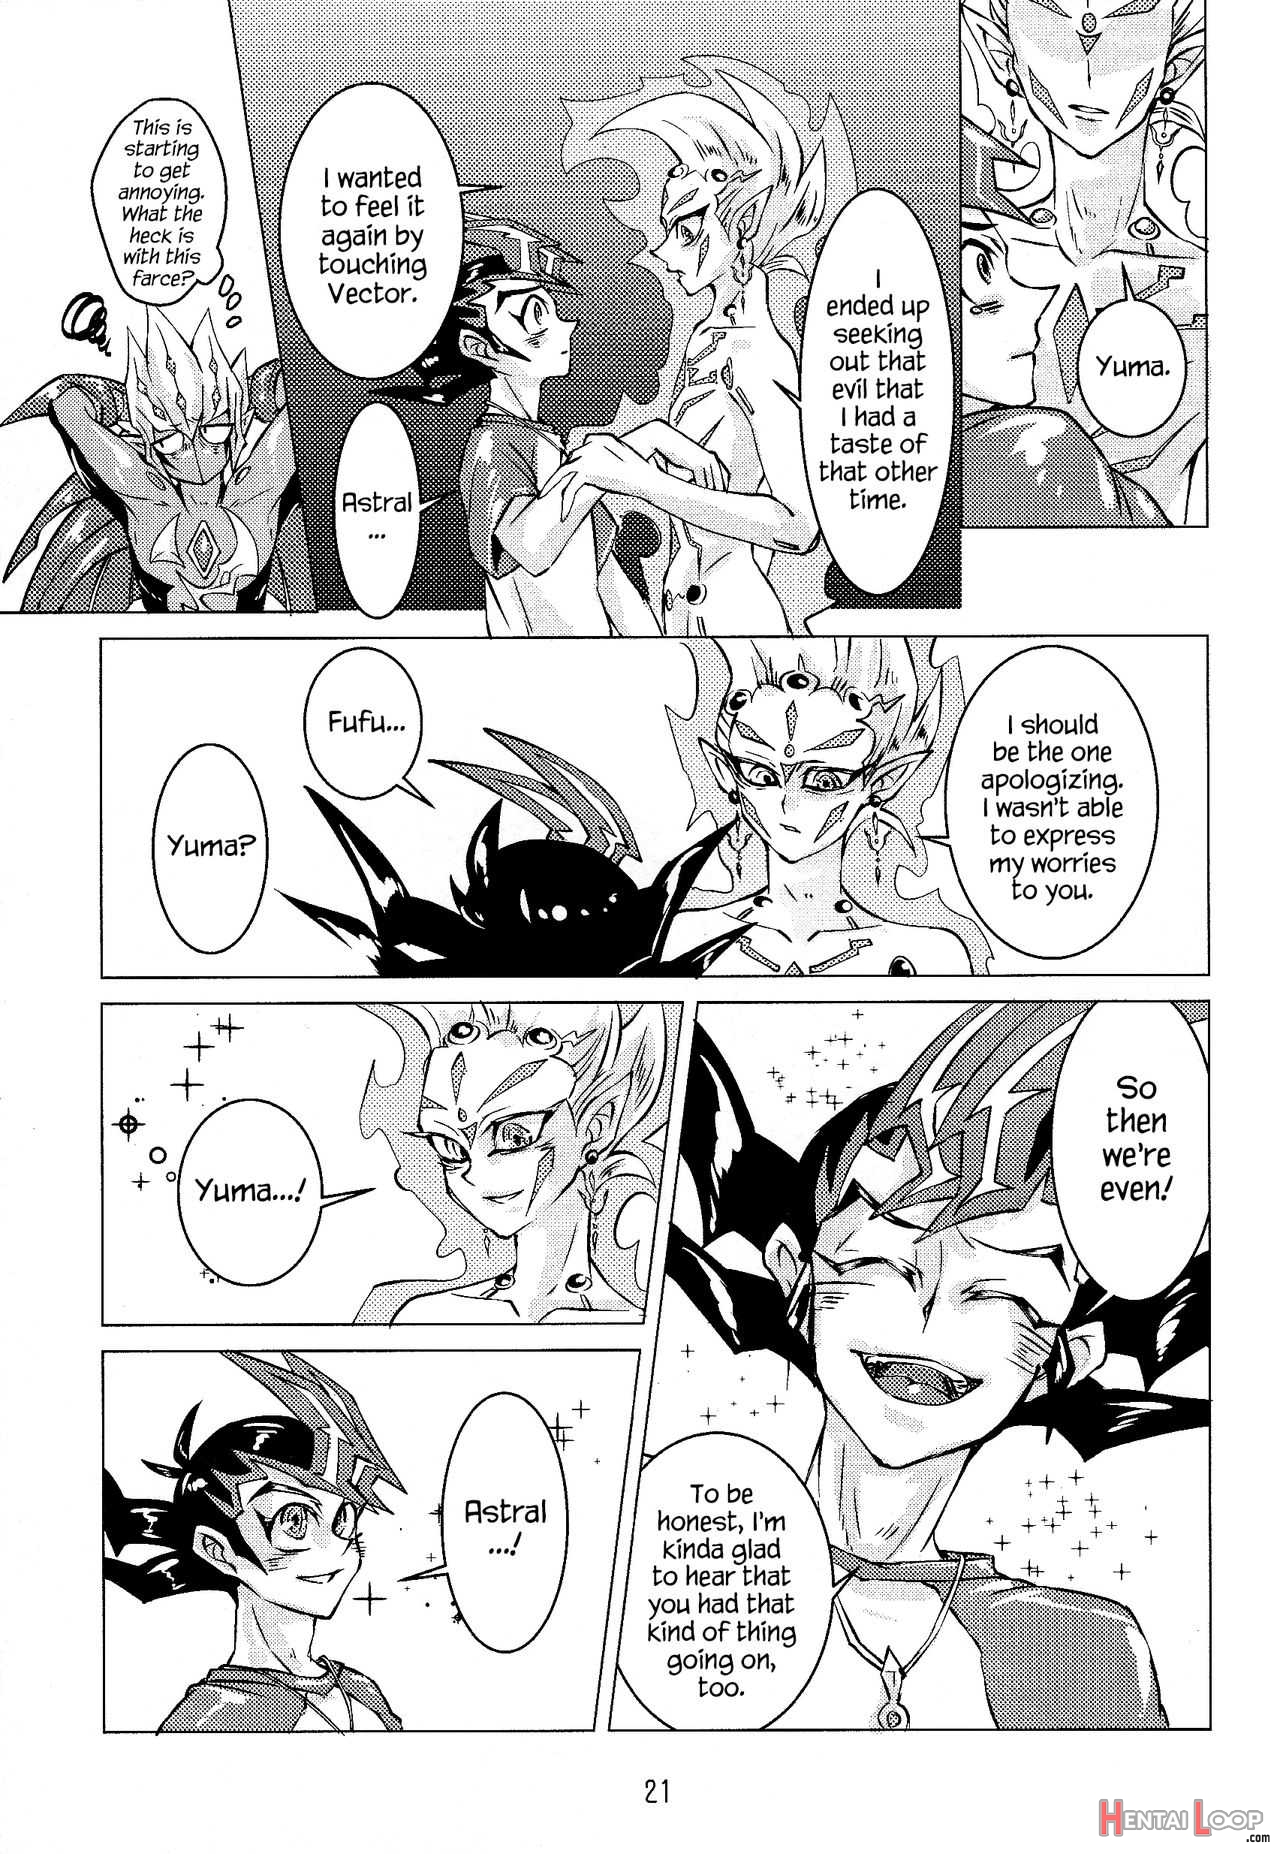 Shingetsu No Yoru Ni Wa Kare Ga Kuru page 22